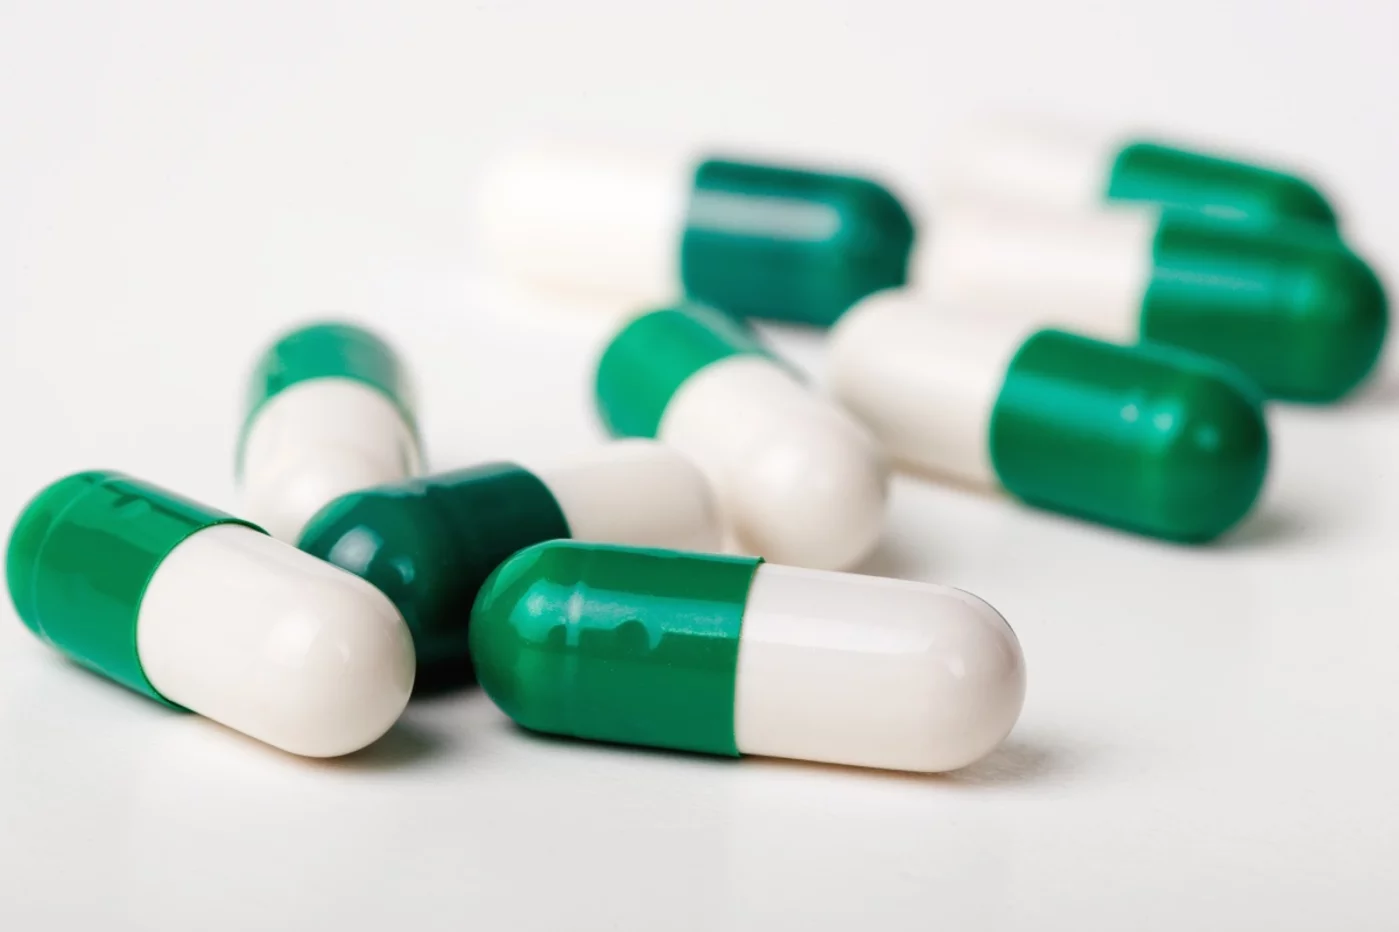 "La Farmacopea Europea es un documento regulatorio donde se establecen las normas para el control de calidad de medicamentos", explica el autor.